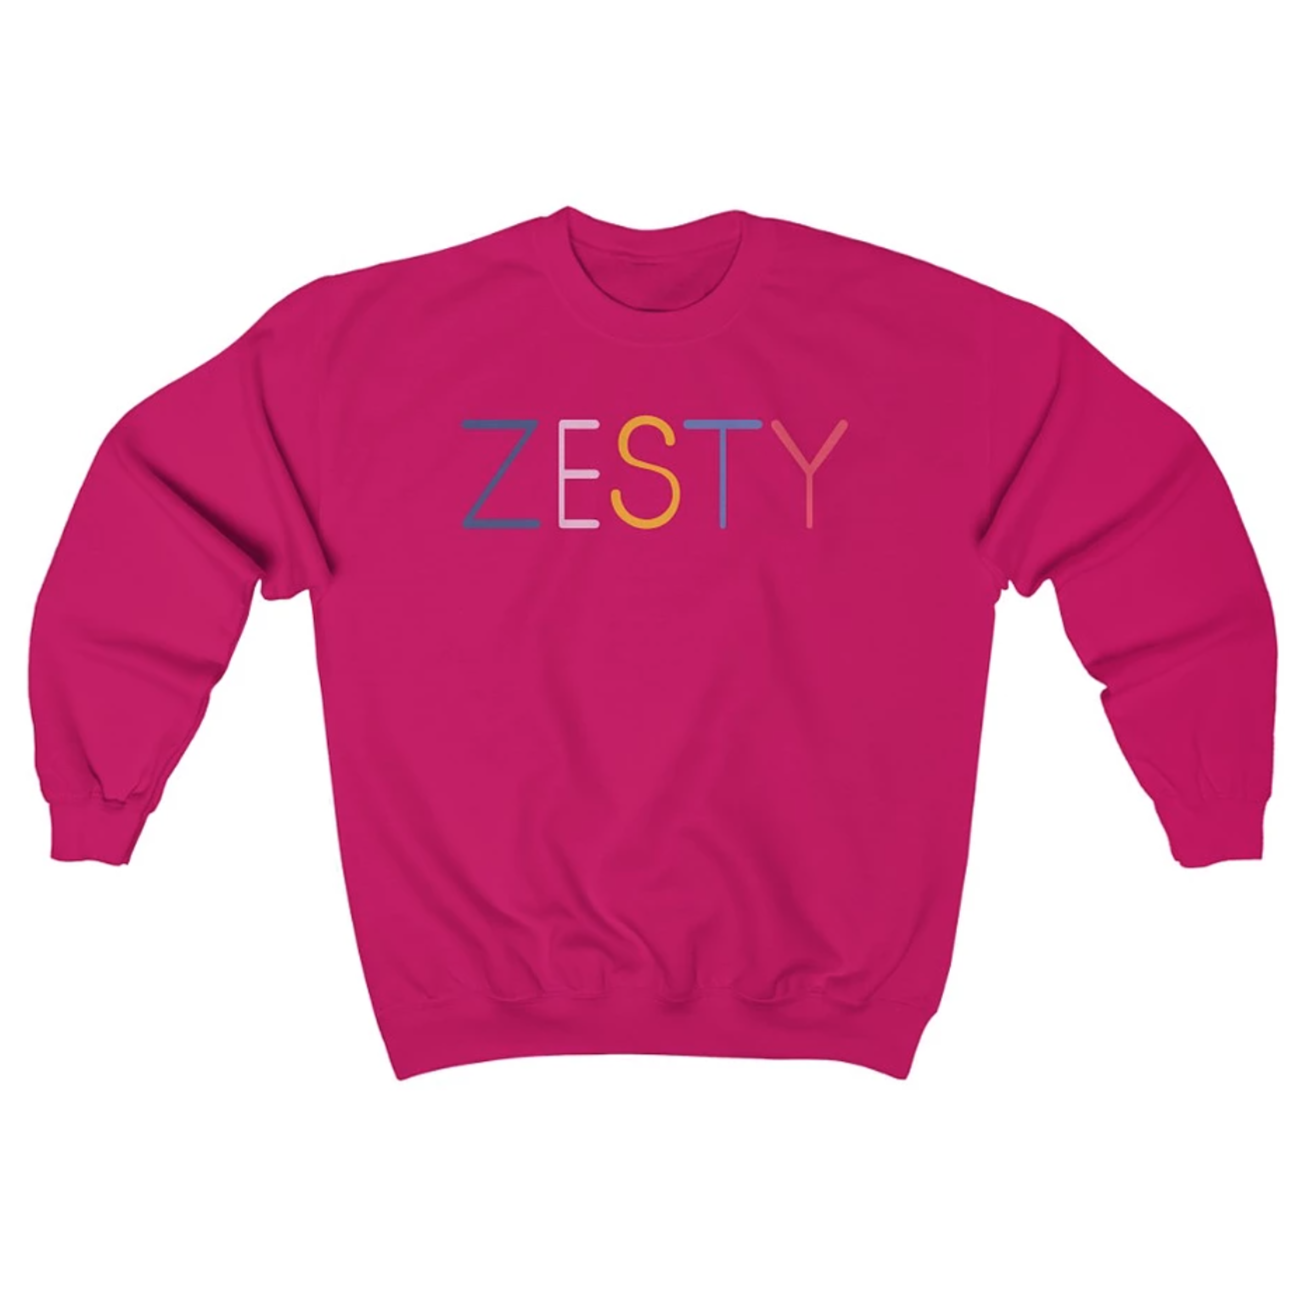 Lady Thom: Zesty Sweatshirt